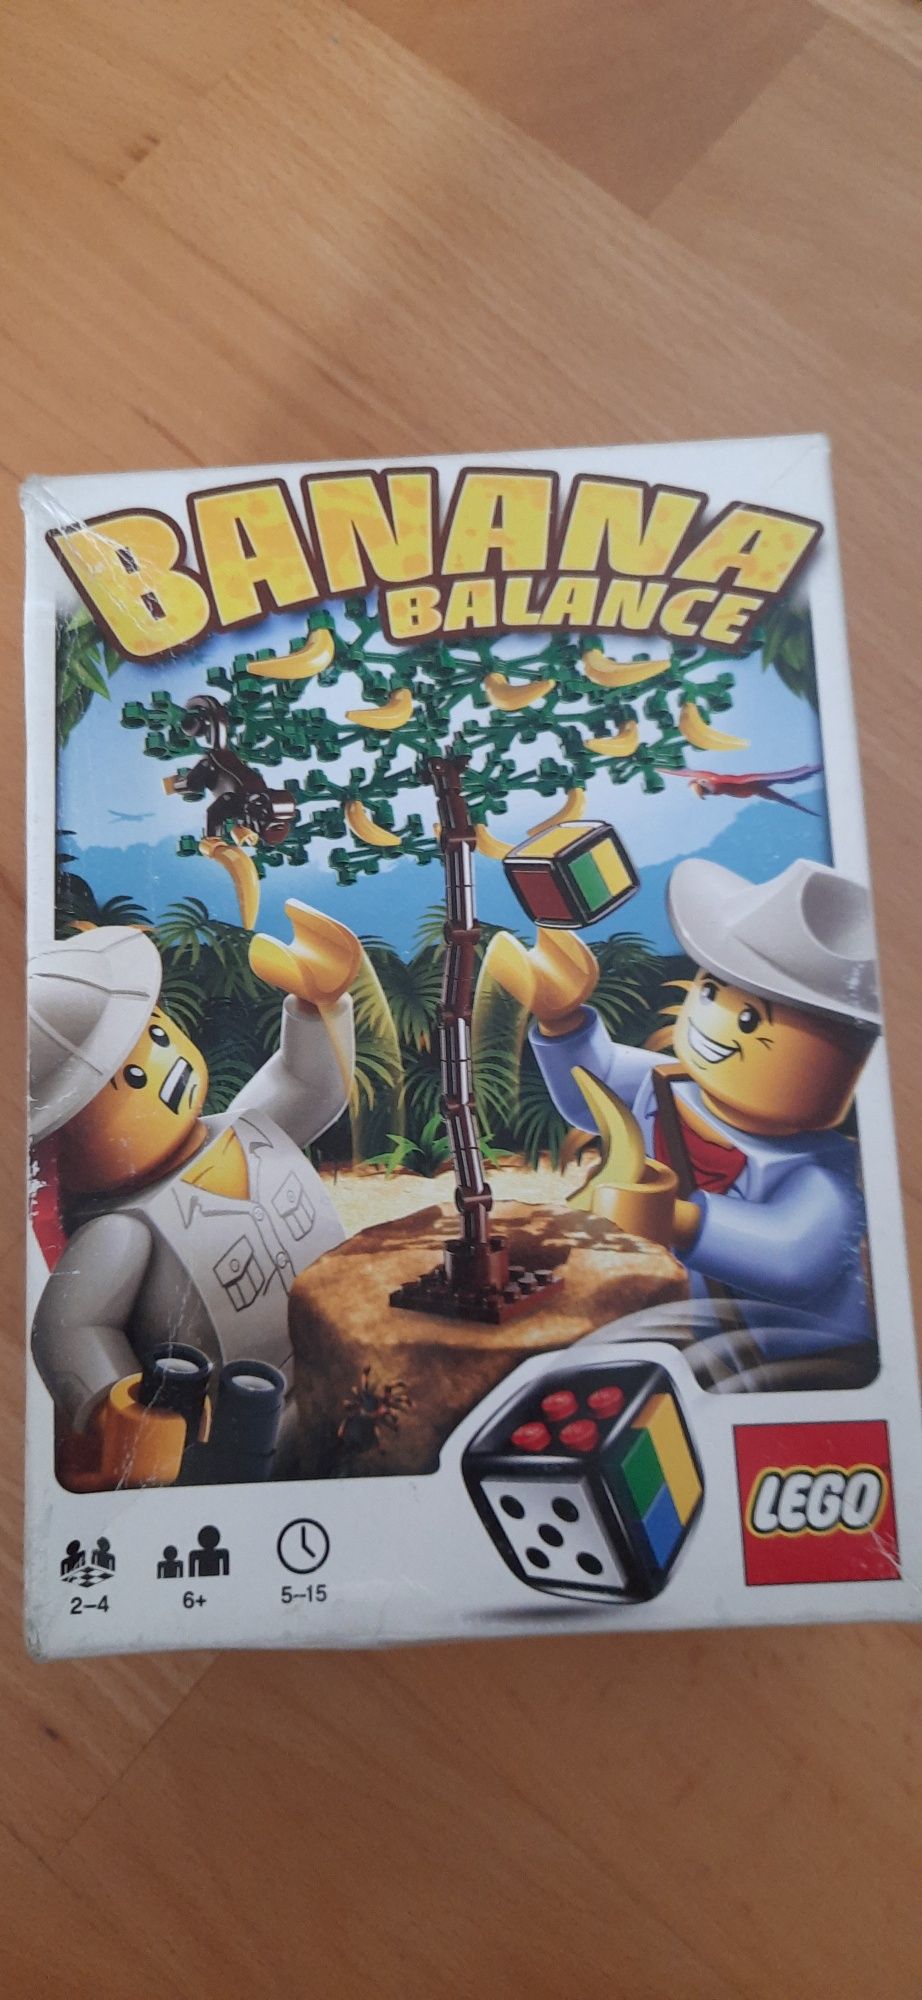 Lego Banana balance 3853 gra zręcznościowa